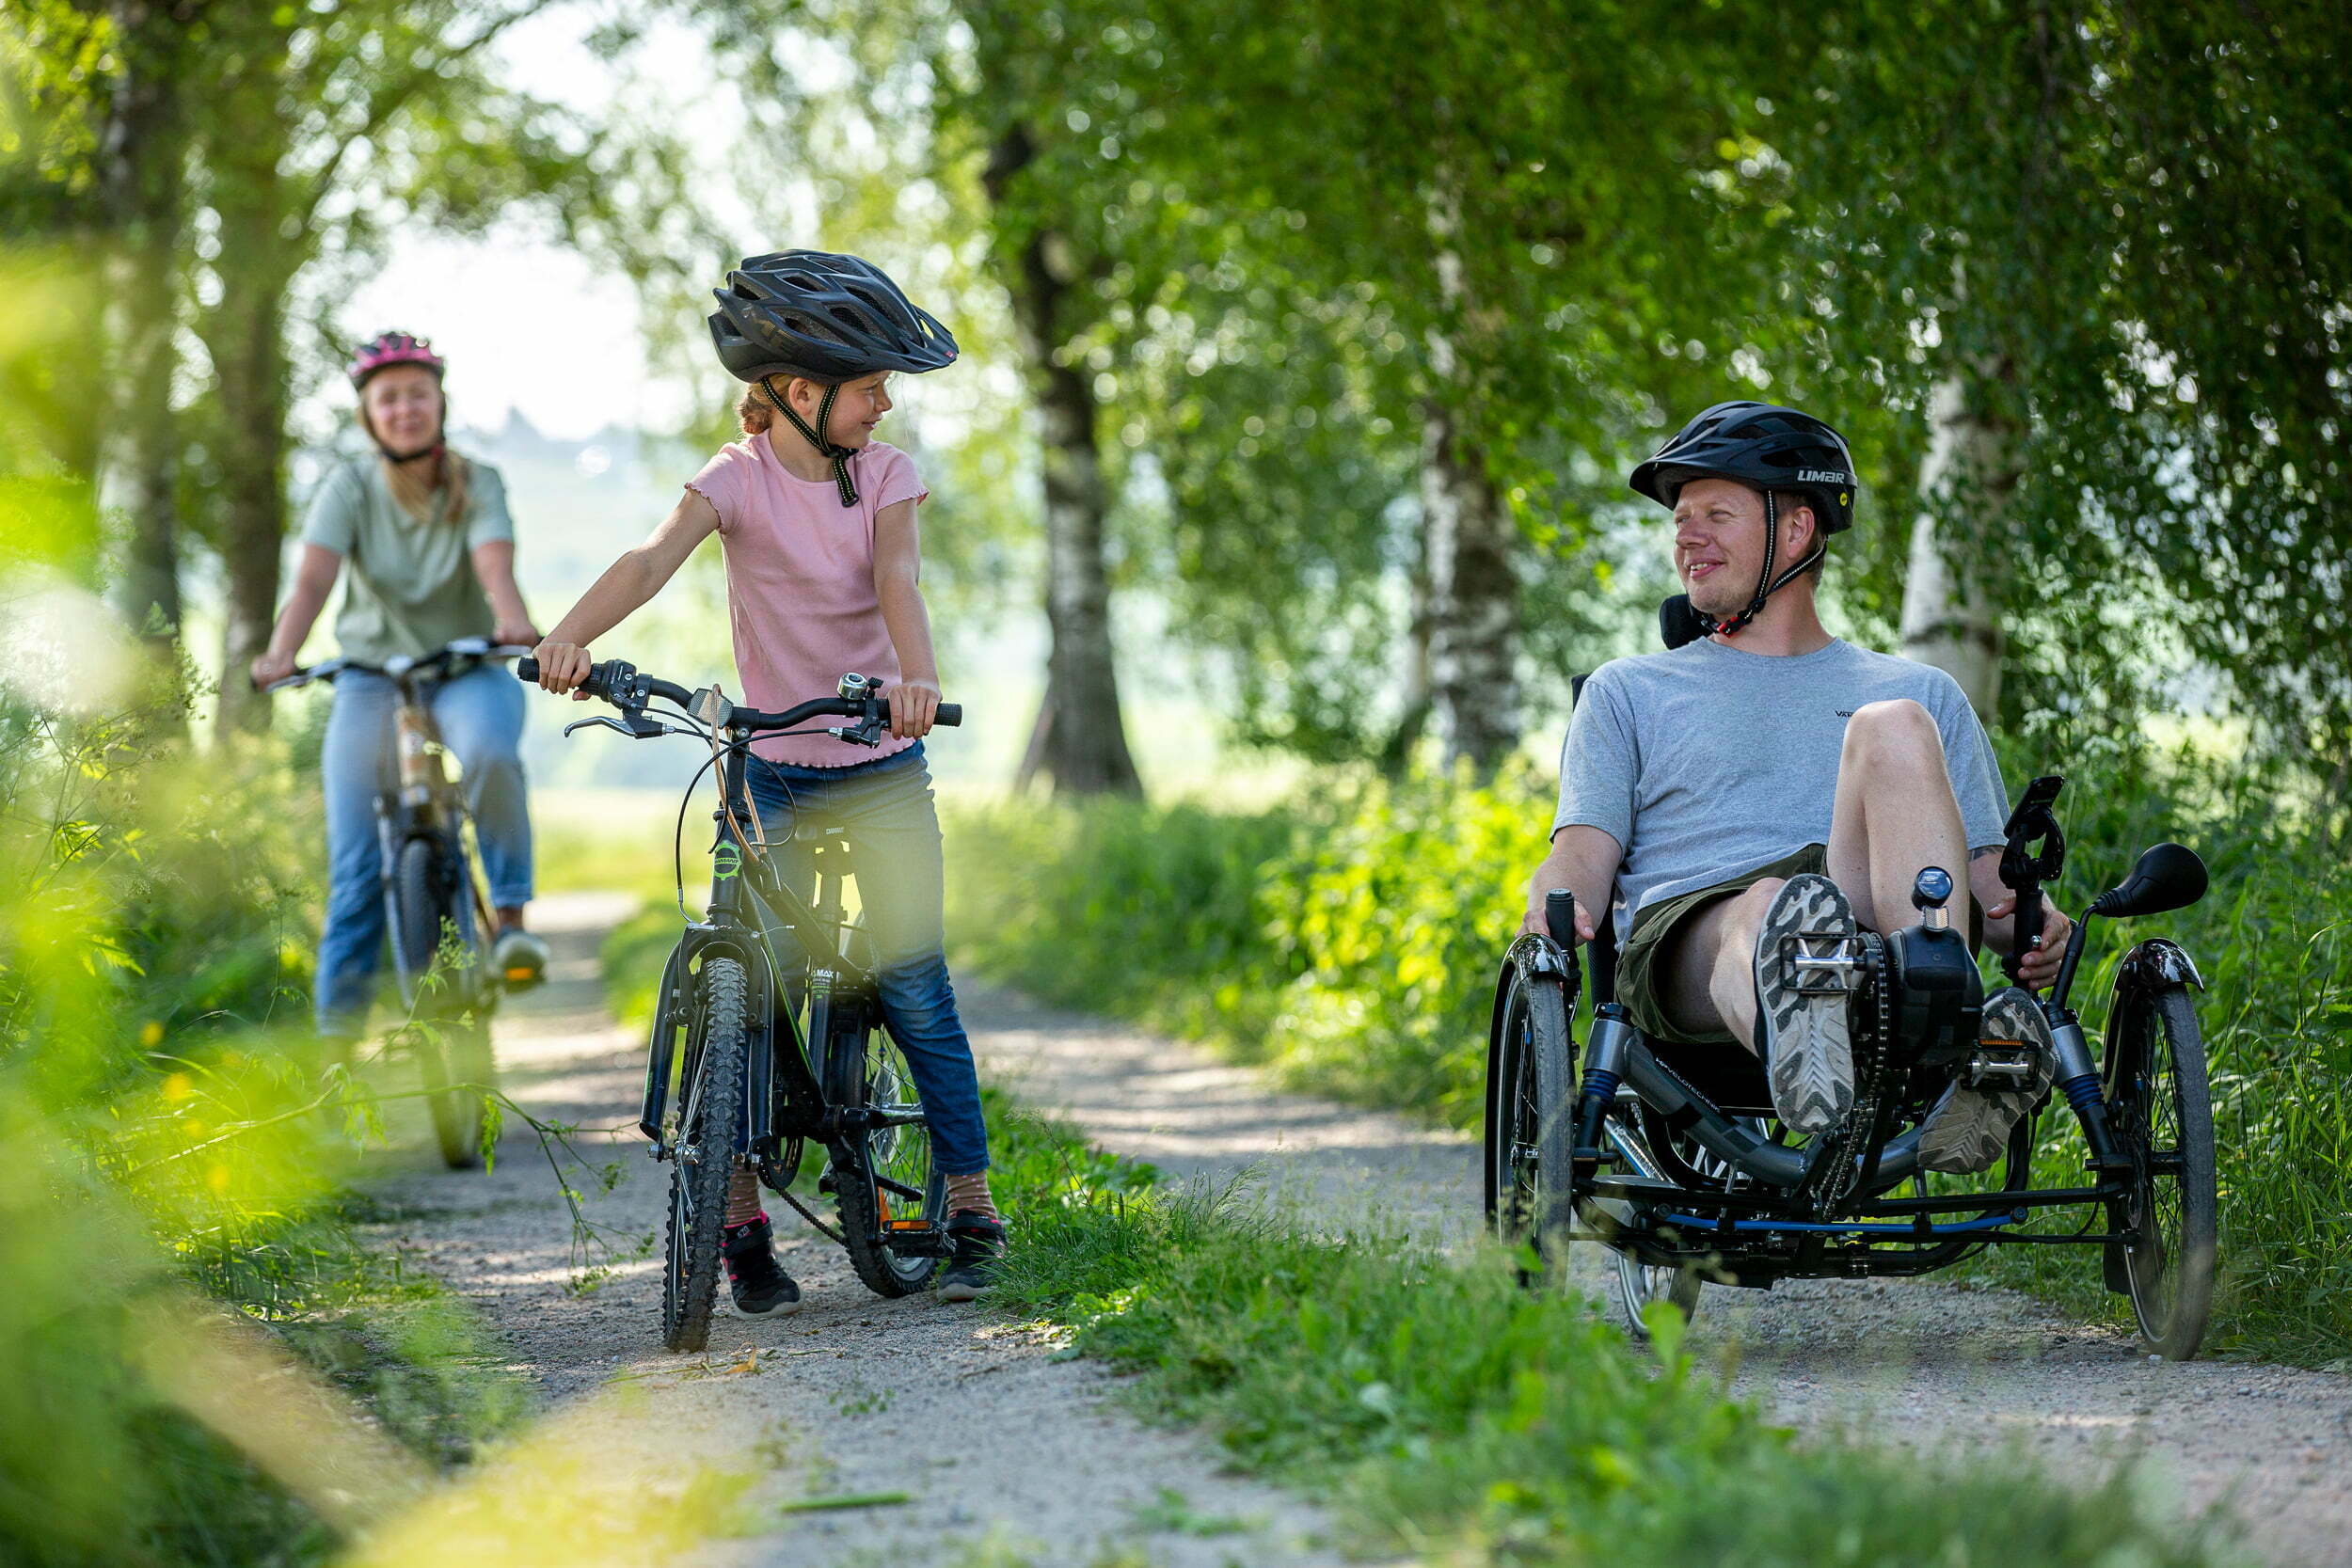 En familie på sykkeltur i skogen. Mamma, datter og pappa. Pappaen sykler på en sittesykkel.